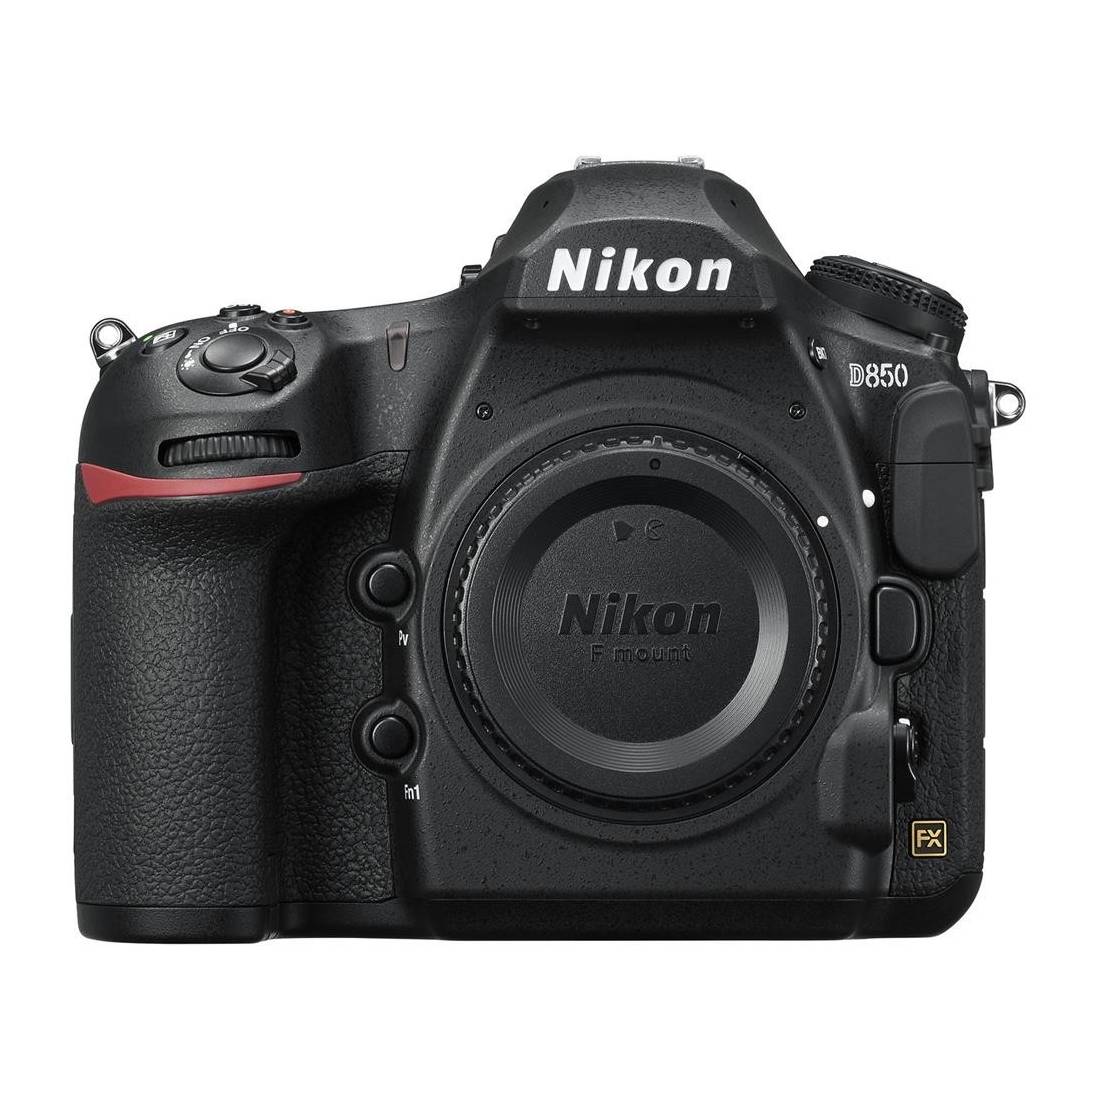 Product Image of Nikon D850 DSLR Camera Body - 45.4MP, 4K Video, 8K time-lapse recording